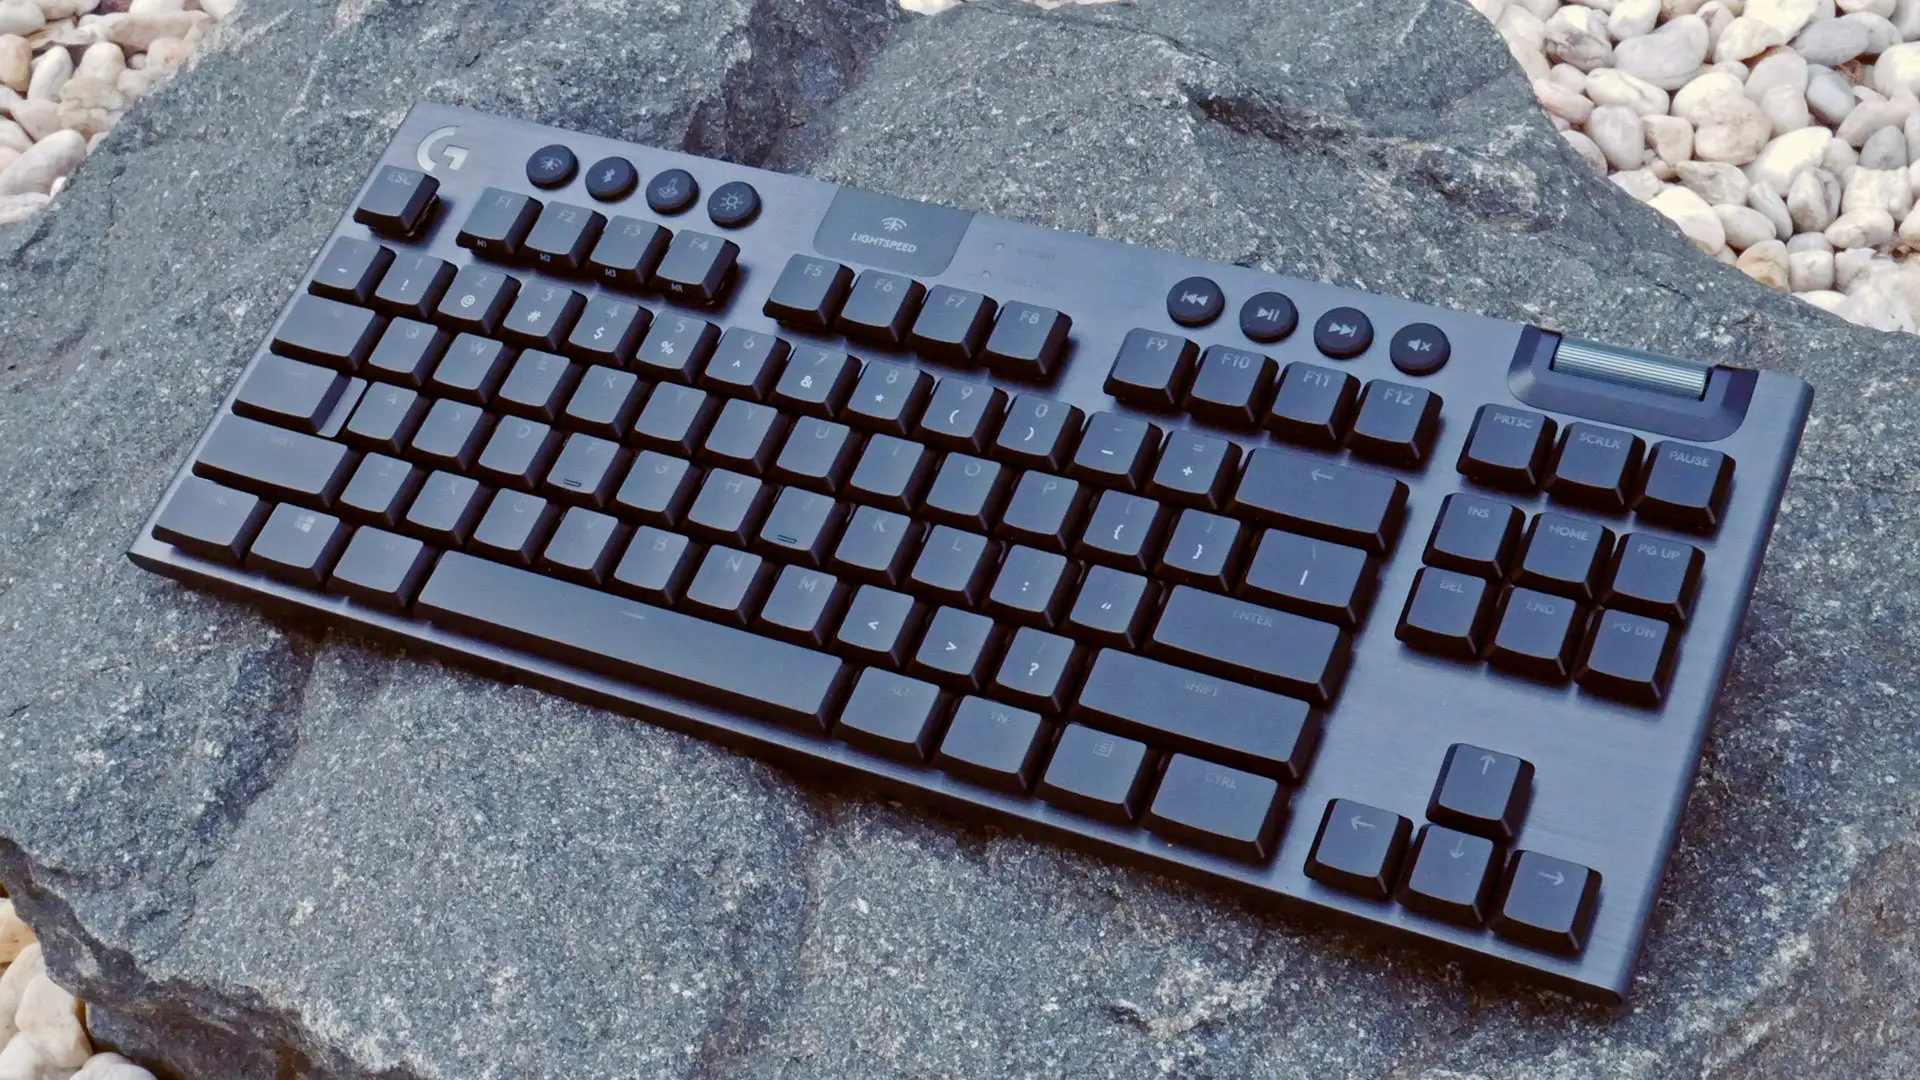 Logitech G915 TKL keyboard sitting on a rock